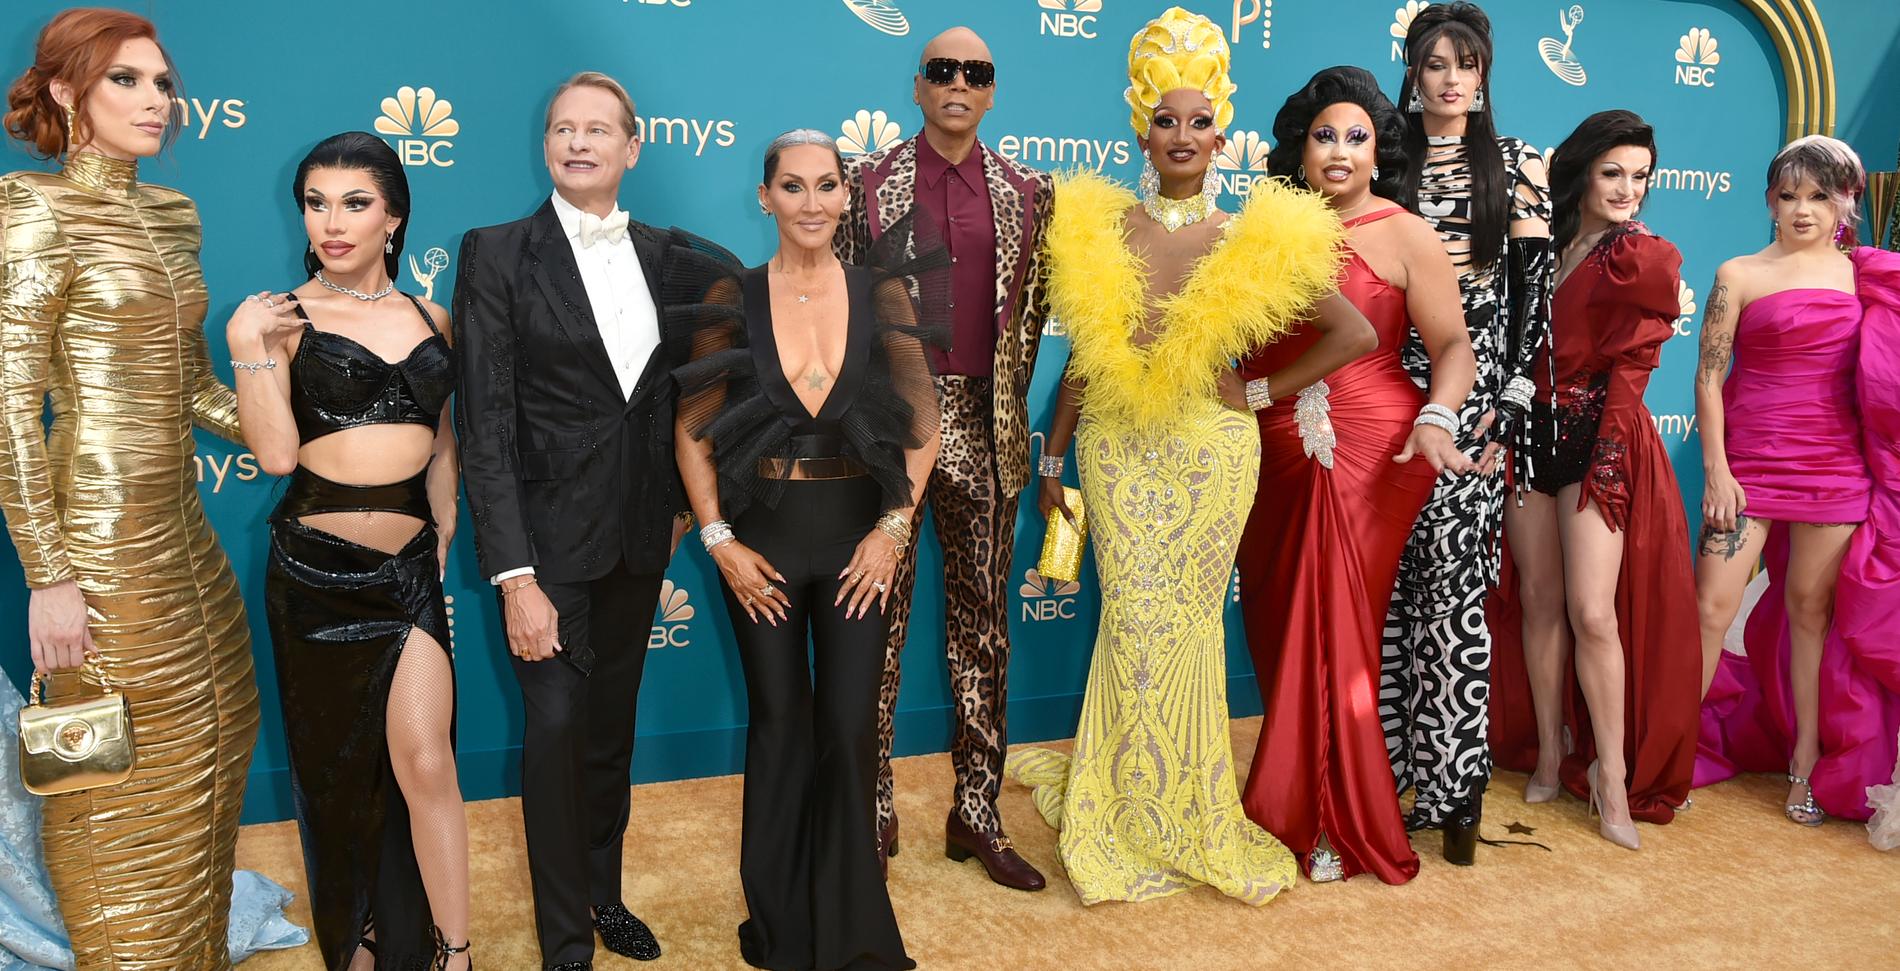 Carson Kressley, Michelle Visage, RuPaul och deltagare i ”RuPaul's Drag Race” på Emmygalan 2022.